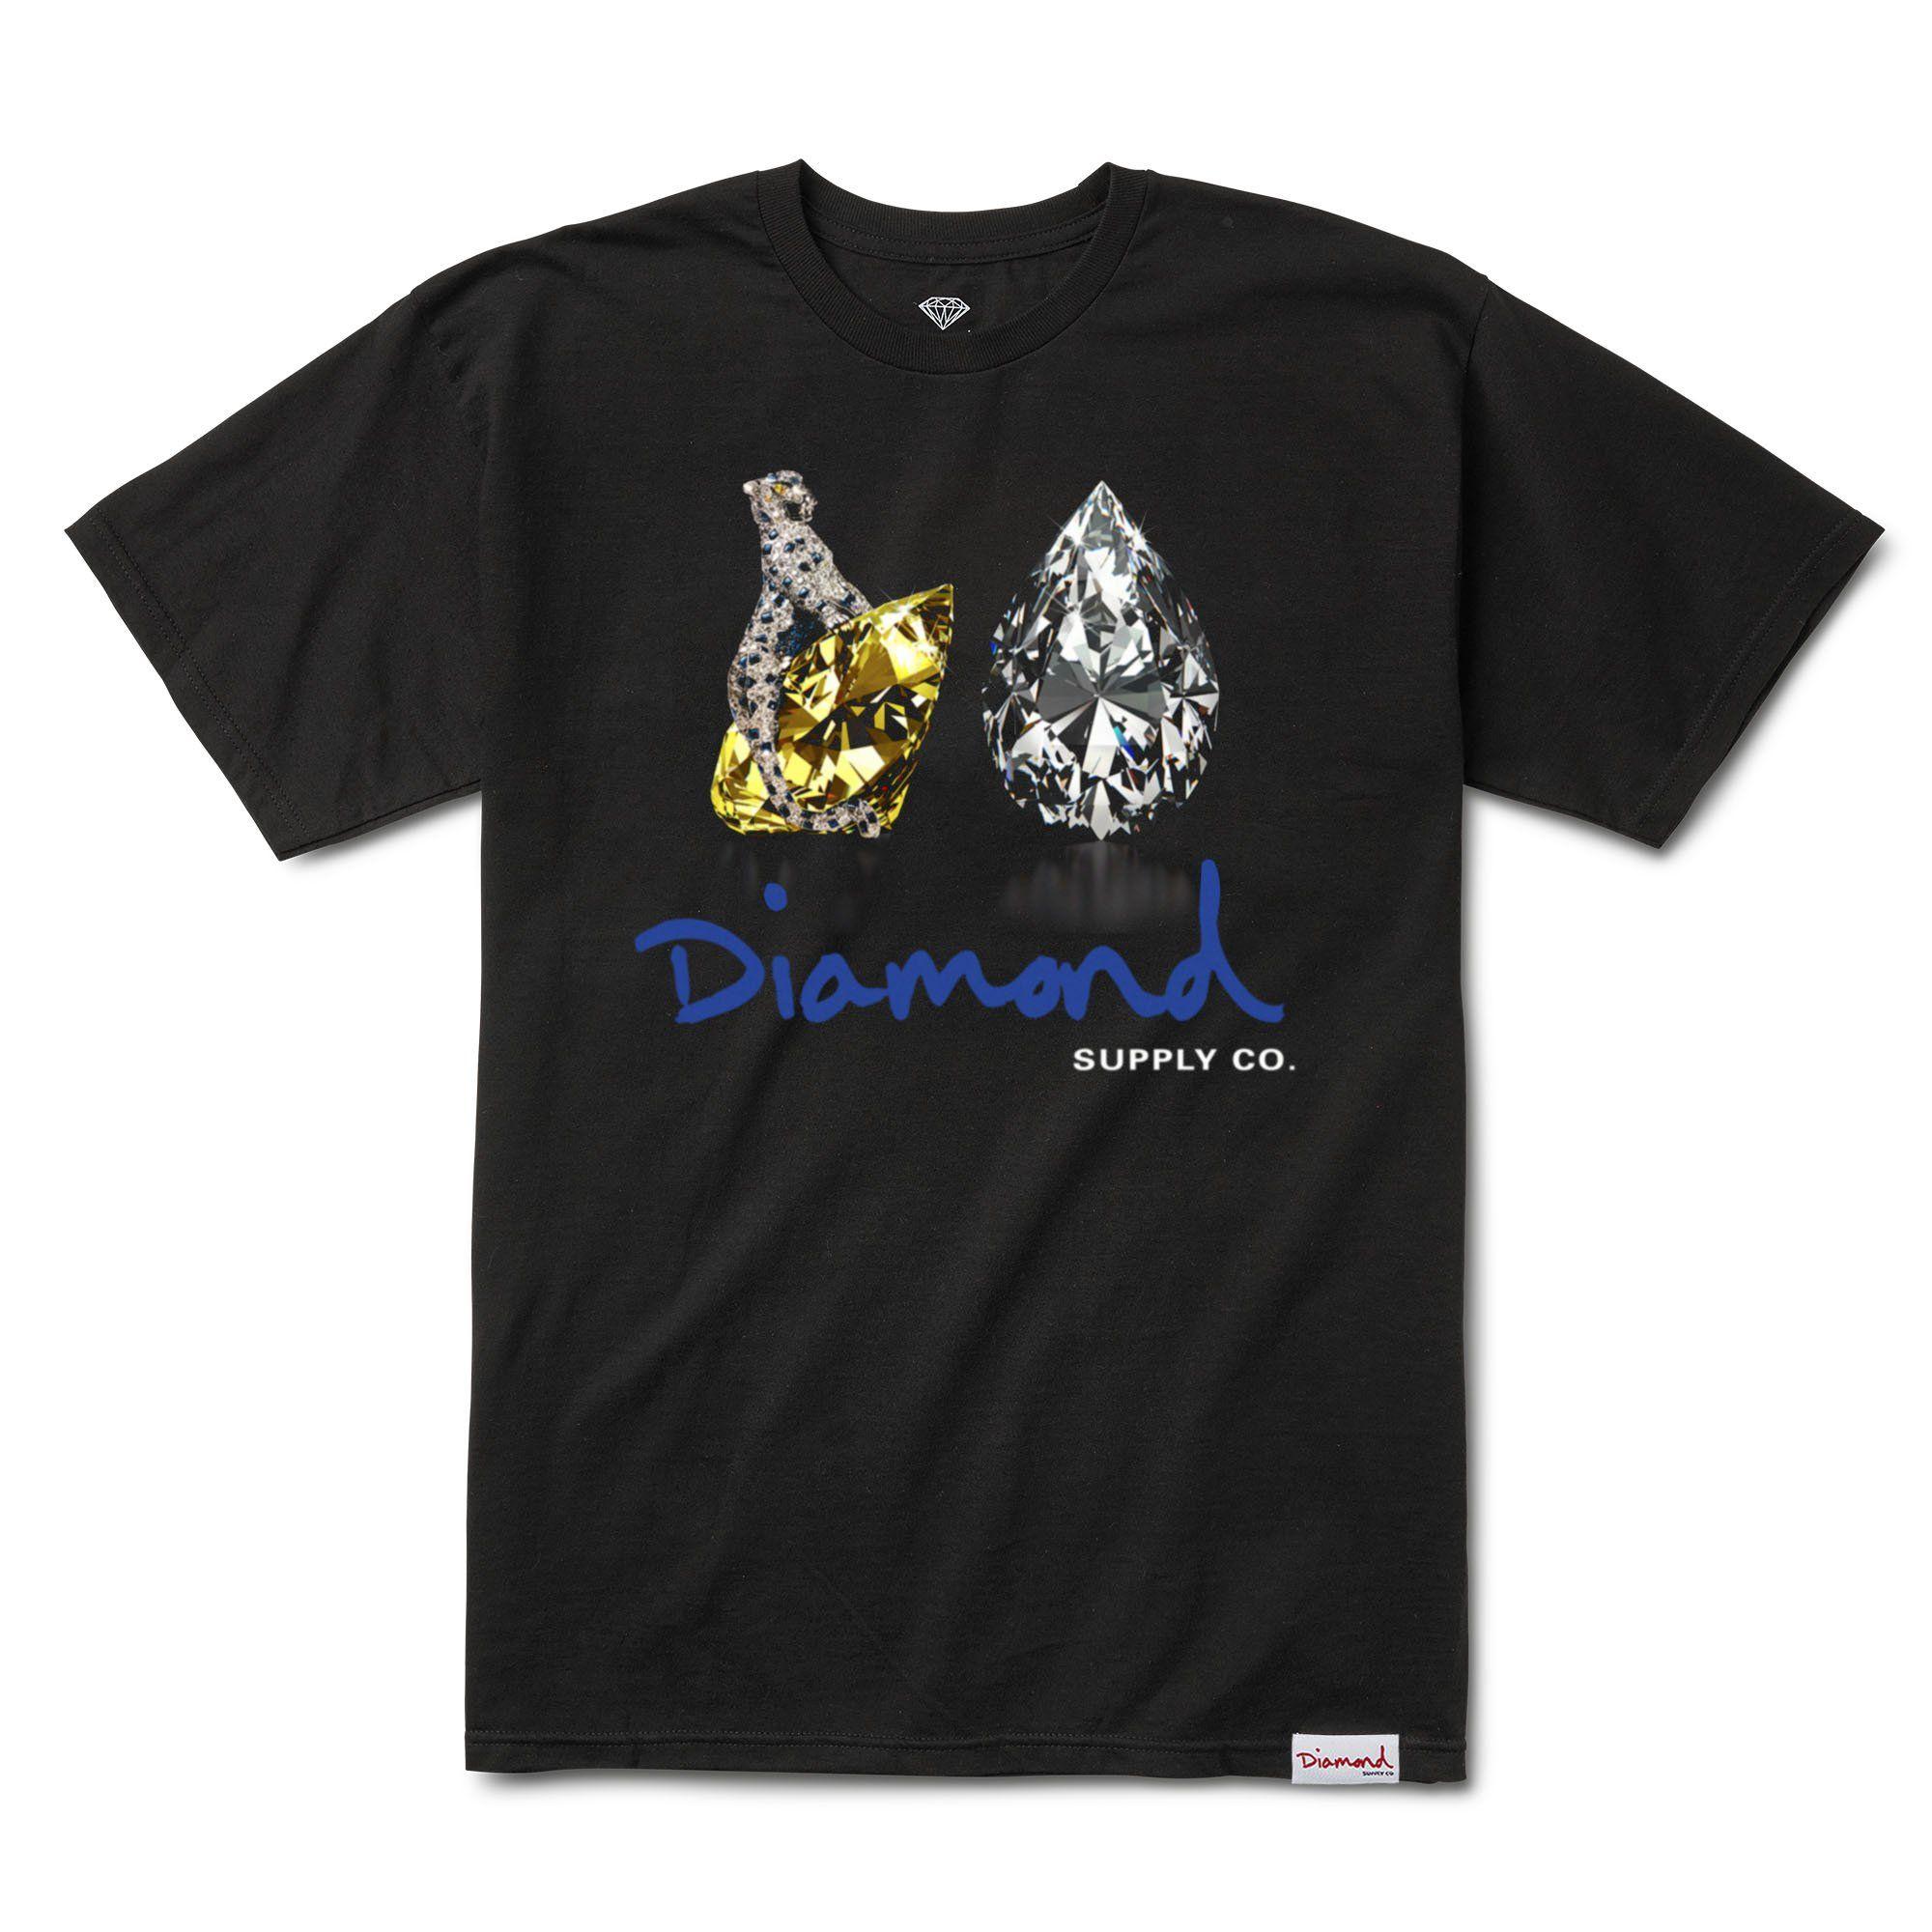 Diamond Clothing Brand Logo - Diamond Supply Co. Tiger Tee